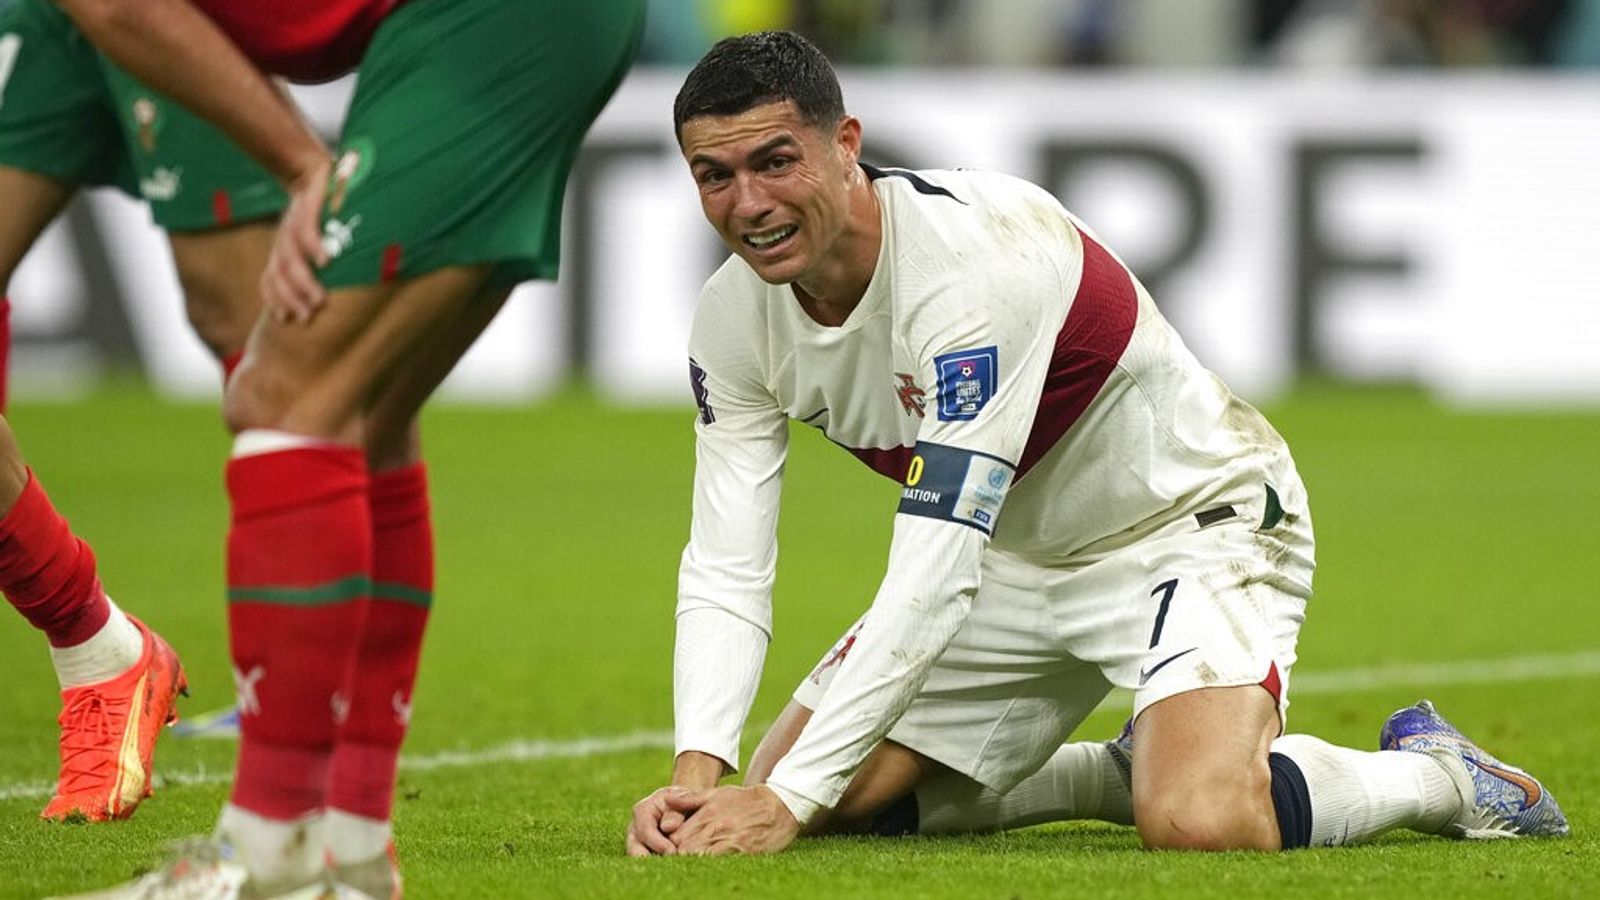 Acertos e erros na Copa do Mundo: marroquinos em êxtase comemoram vitória histórica sobre Portugal enquanto a emoção transborda Cristiano Ronaldo |  notícias de futebol